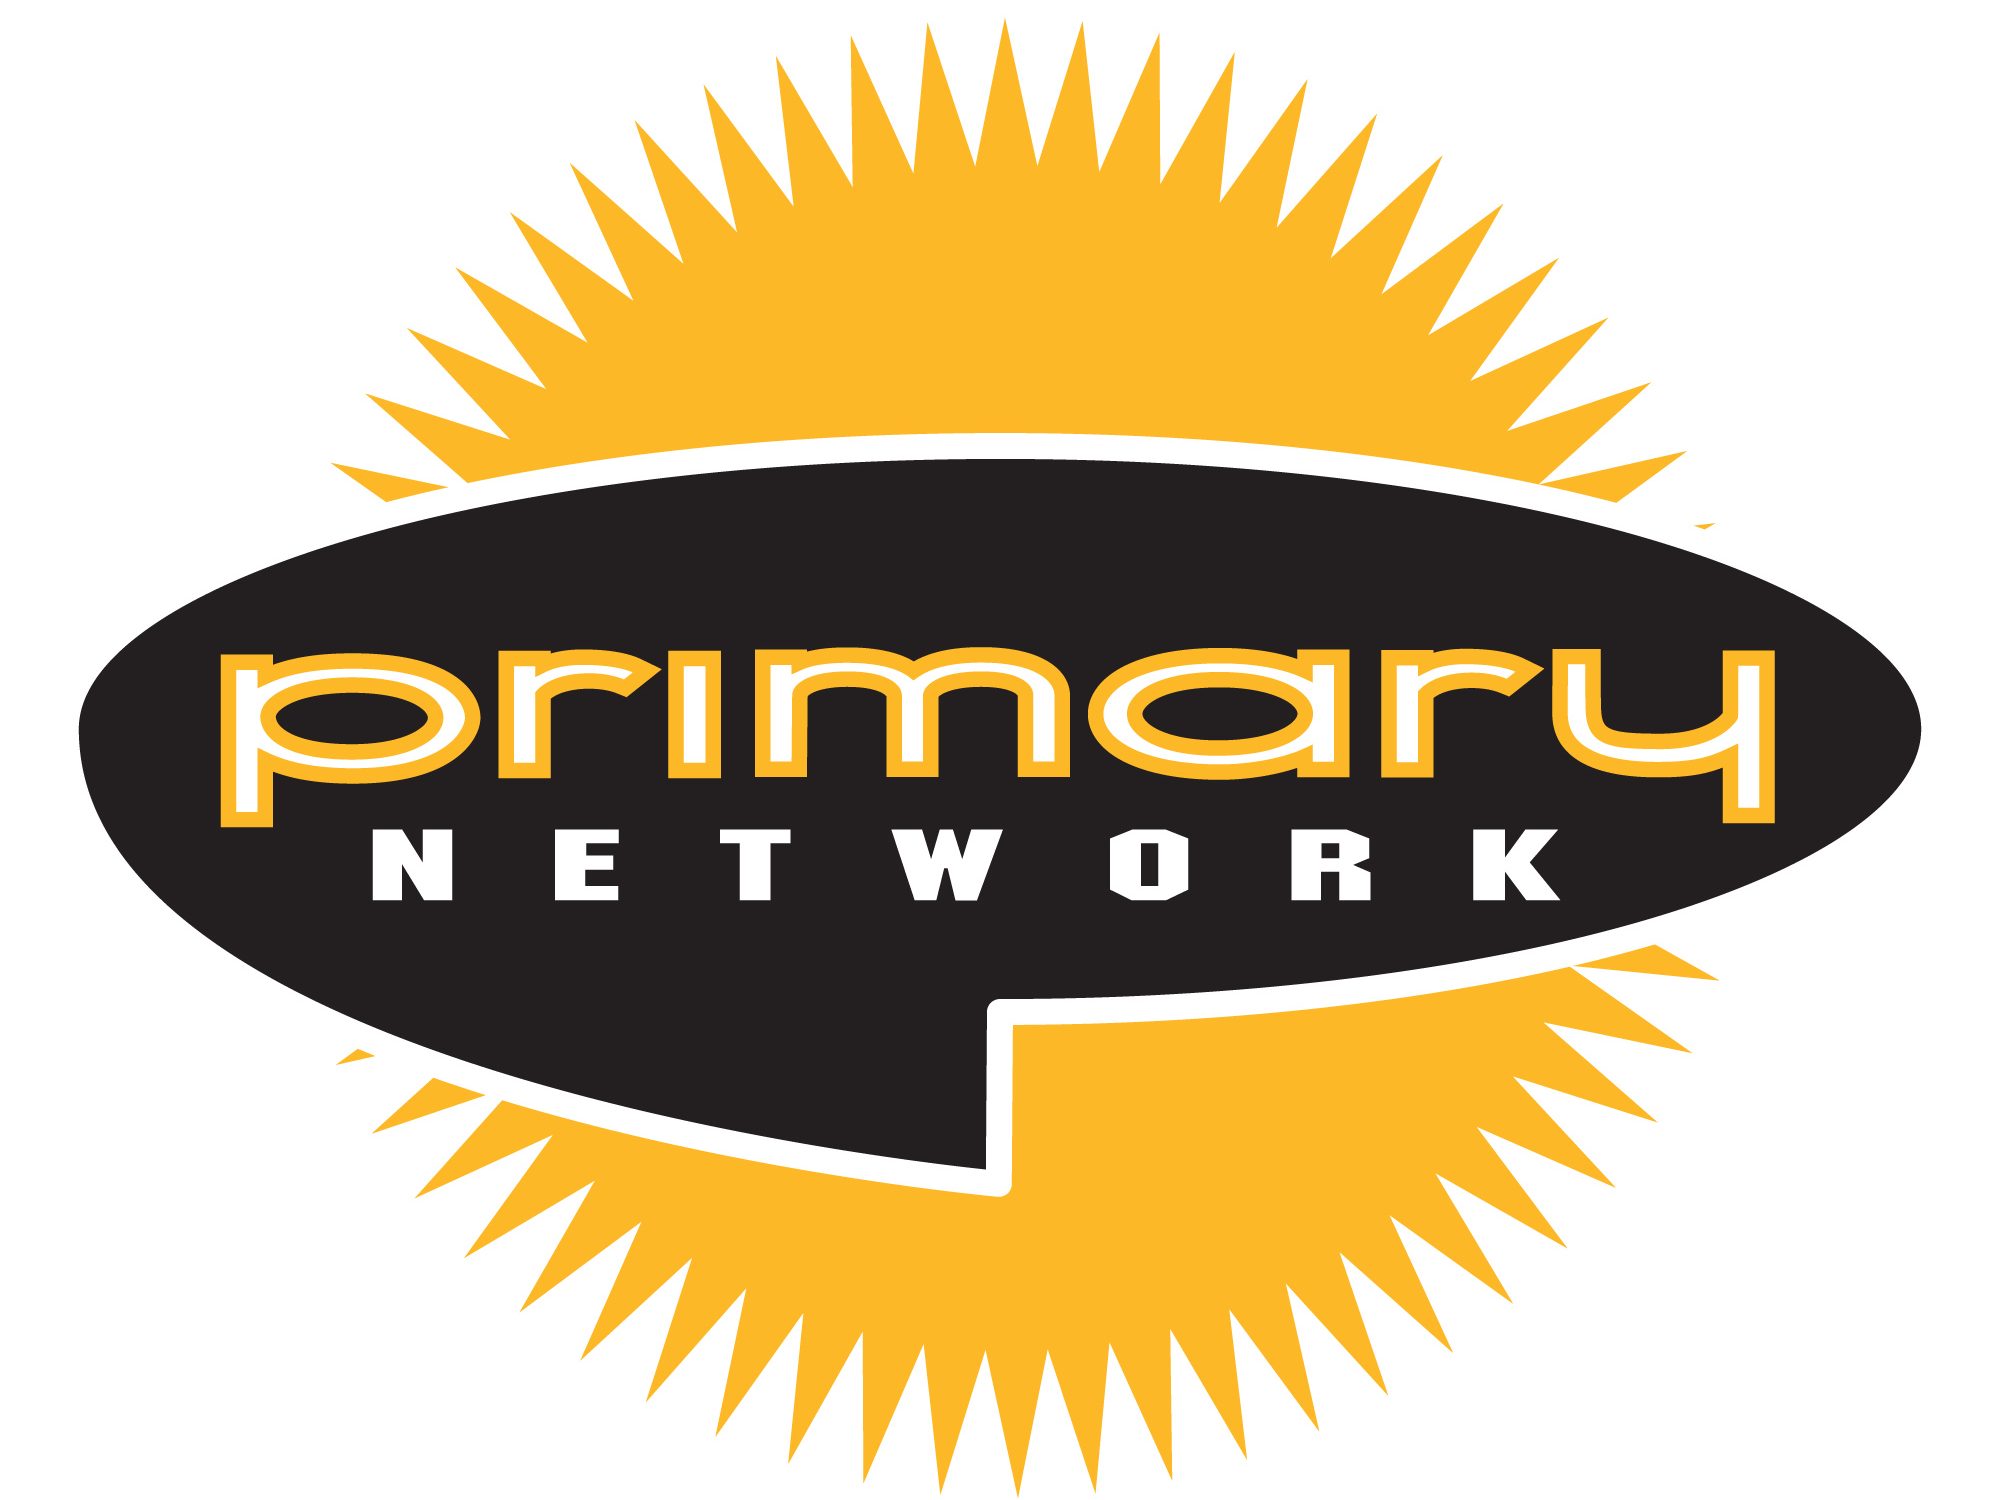 Primary Network